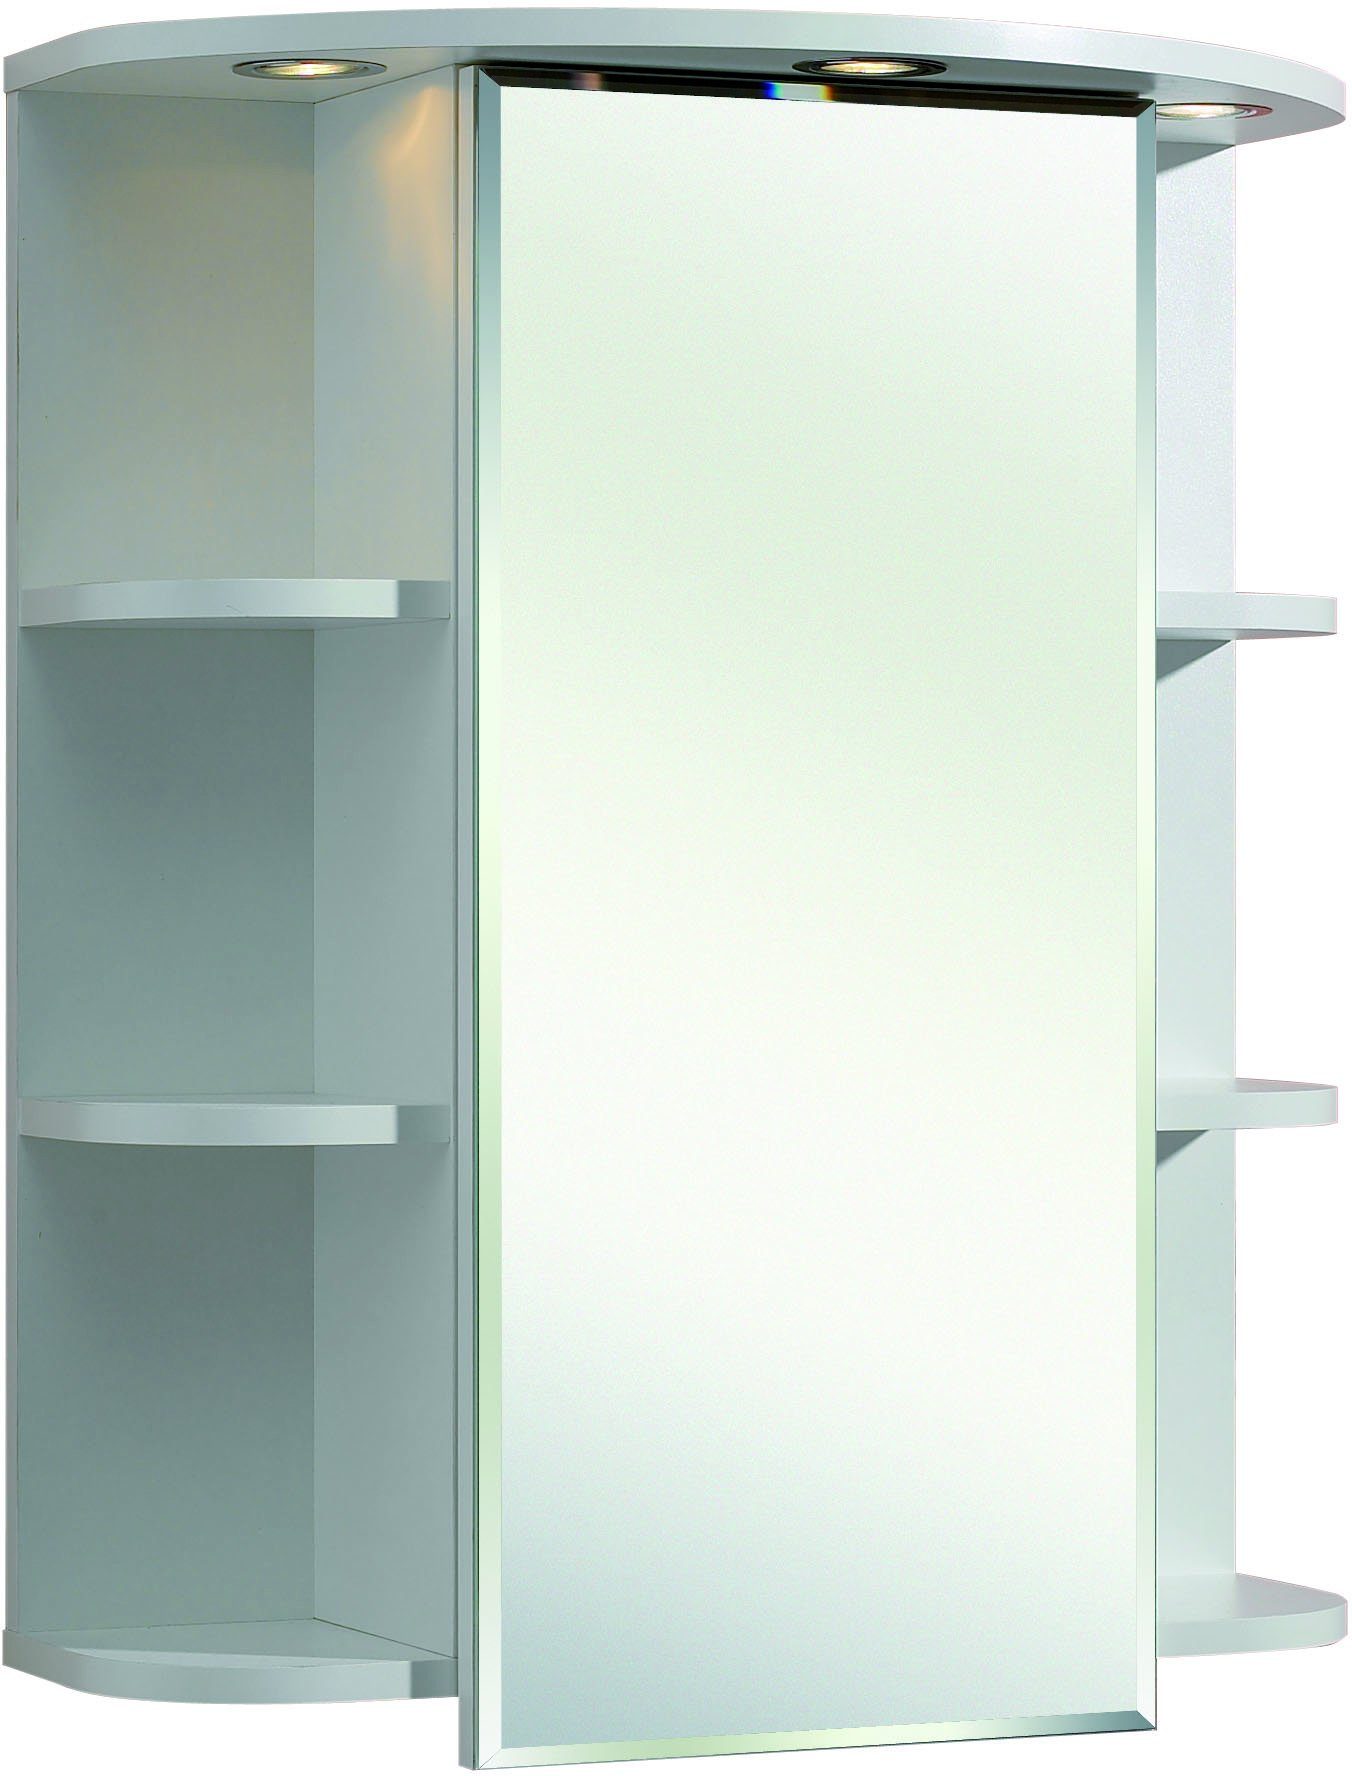 PELIPAL Badezimmerspiegelschrank Quickset 335 | Spiegelschränke